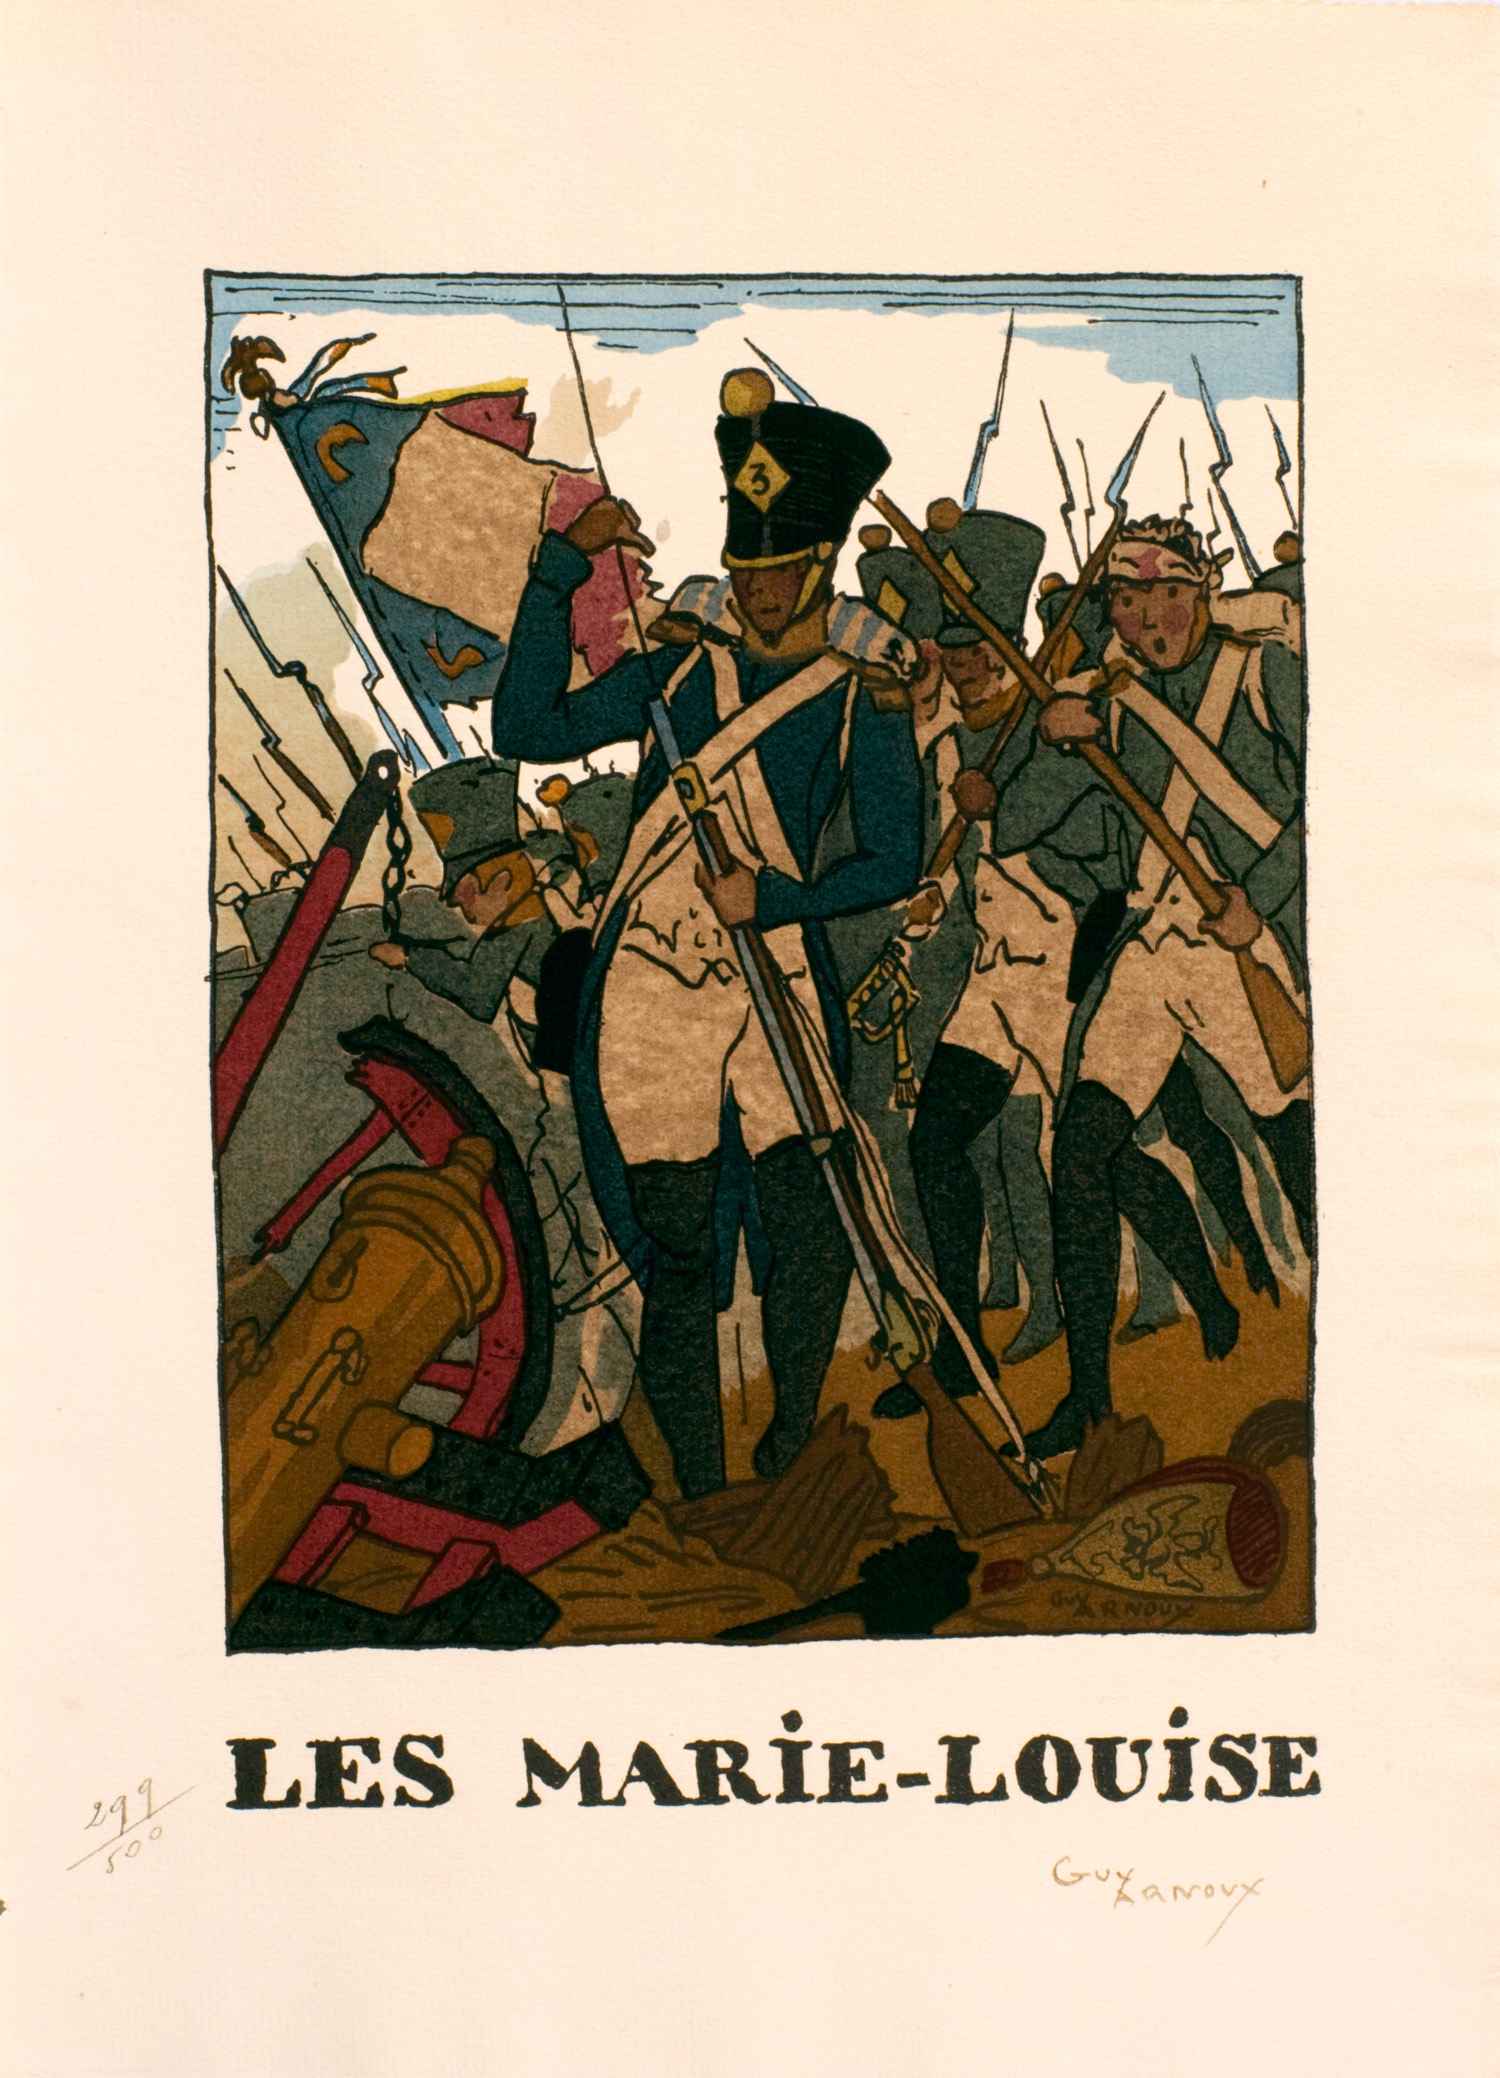 Les Marie-Louise | Guy Arnoux | Les jeunes héros de France